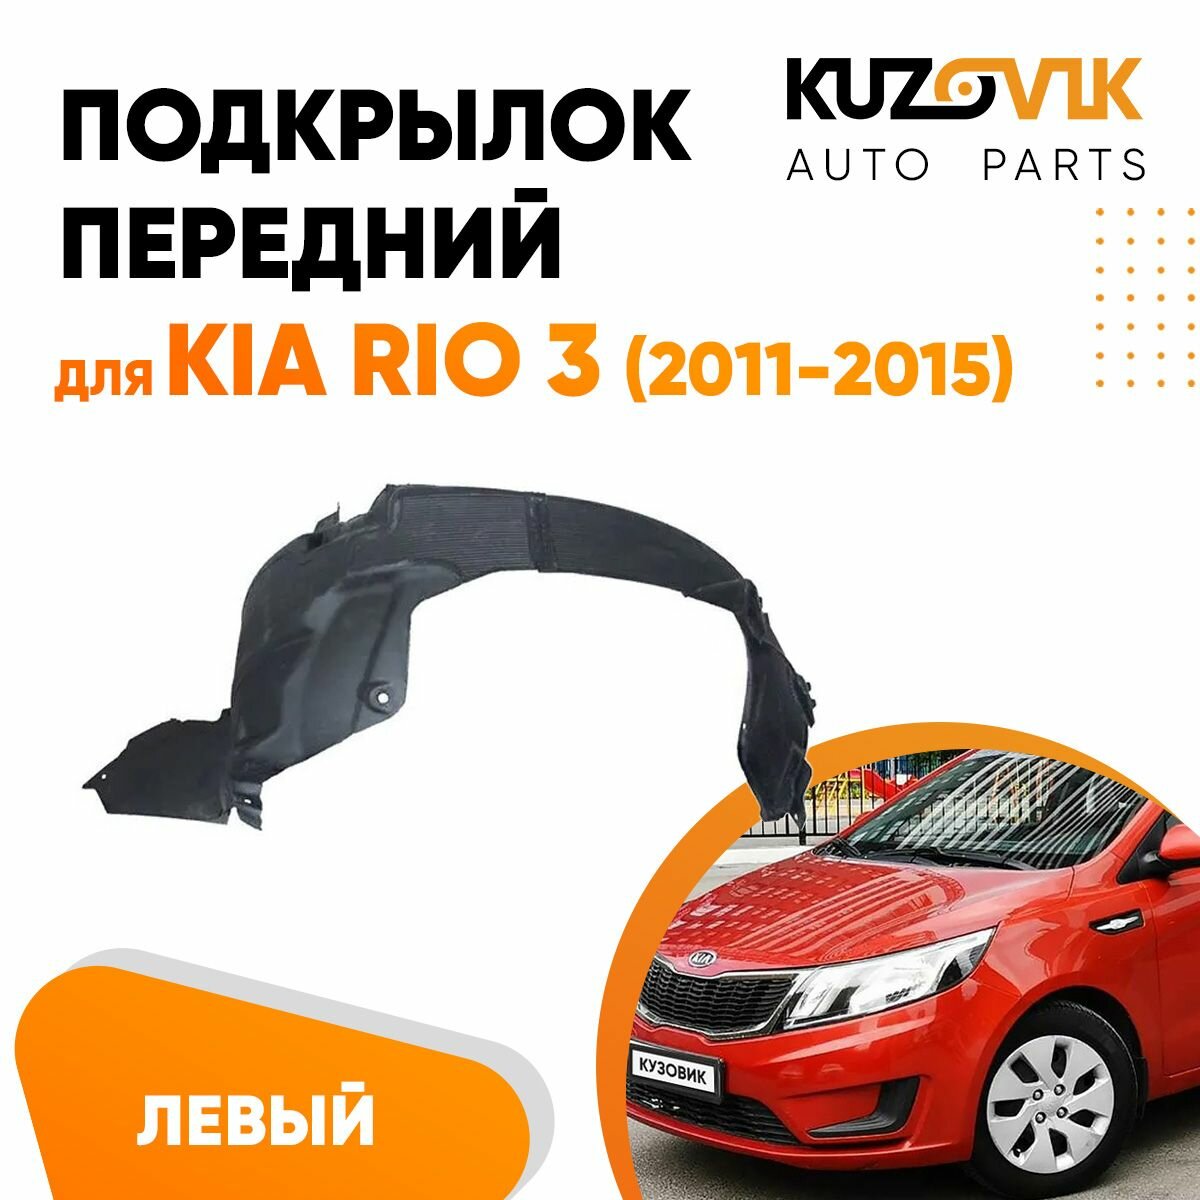 Подкрылок передний левый для Киа Рио Kia Rio 3 (2011-2015) локер, защита крыла